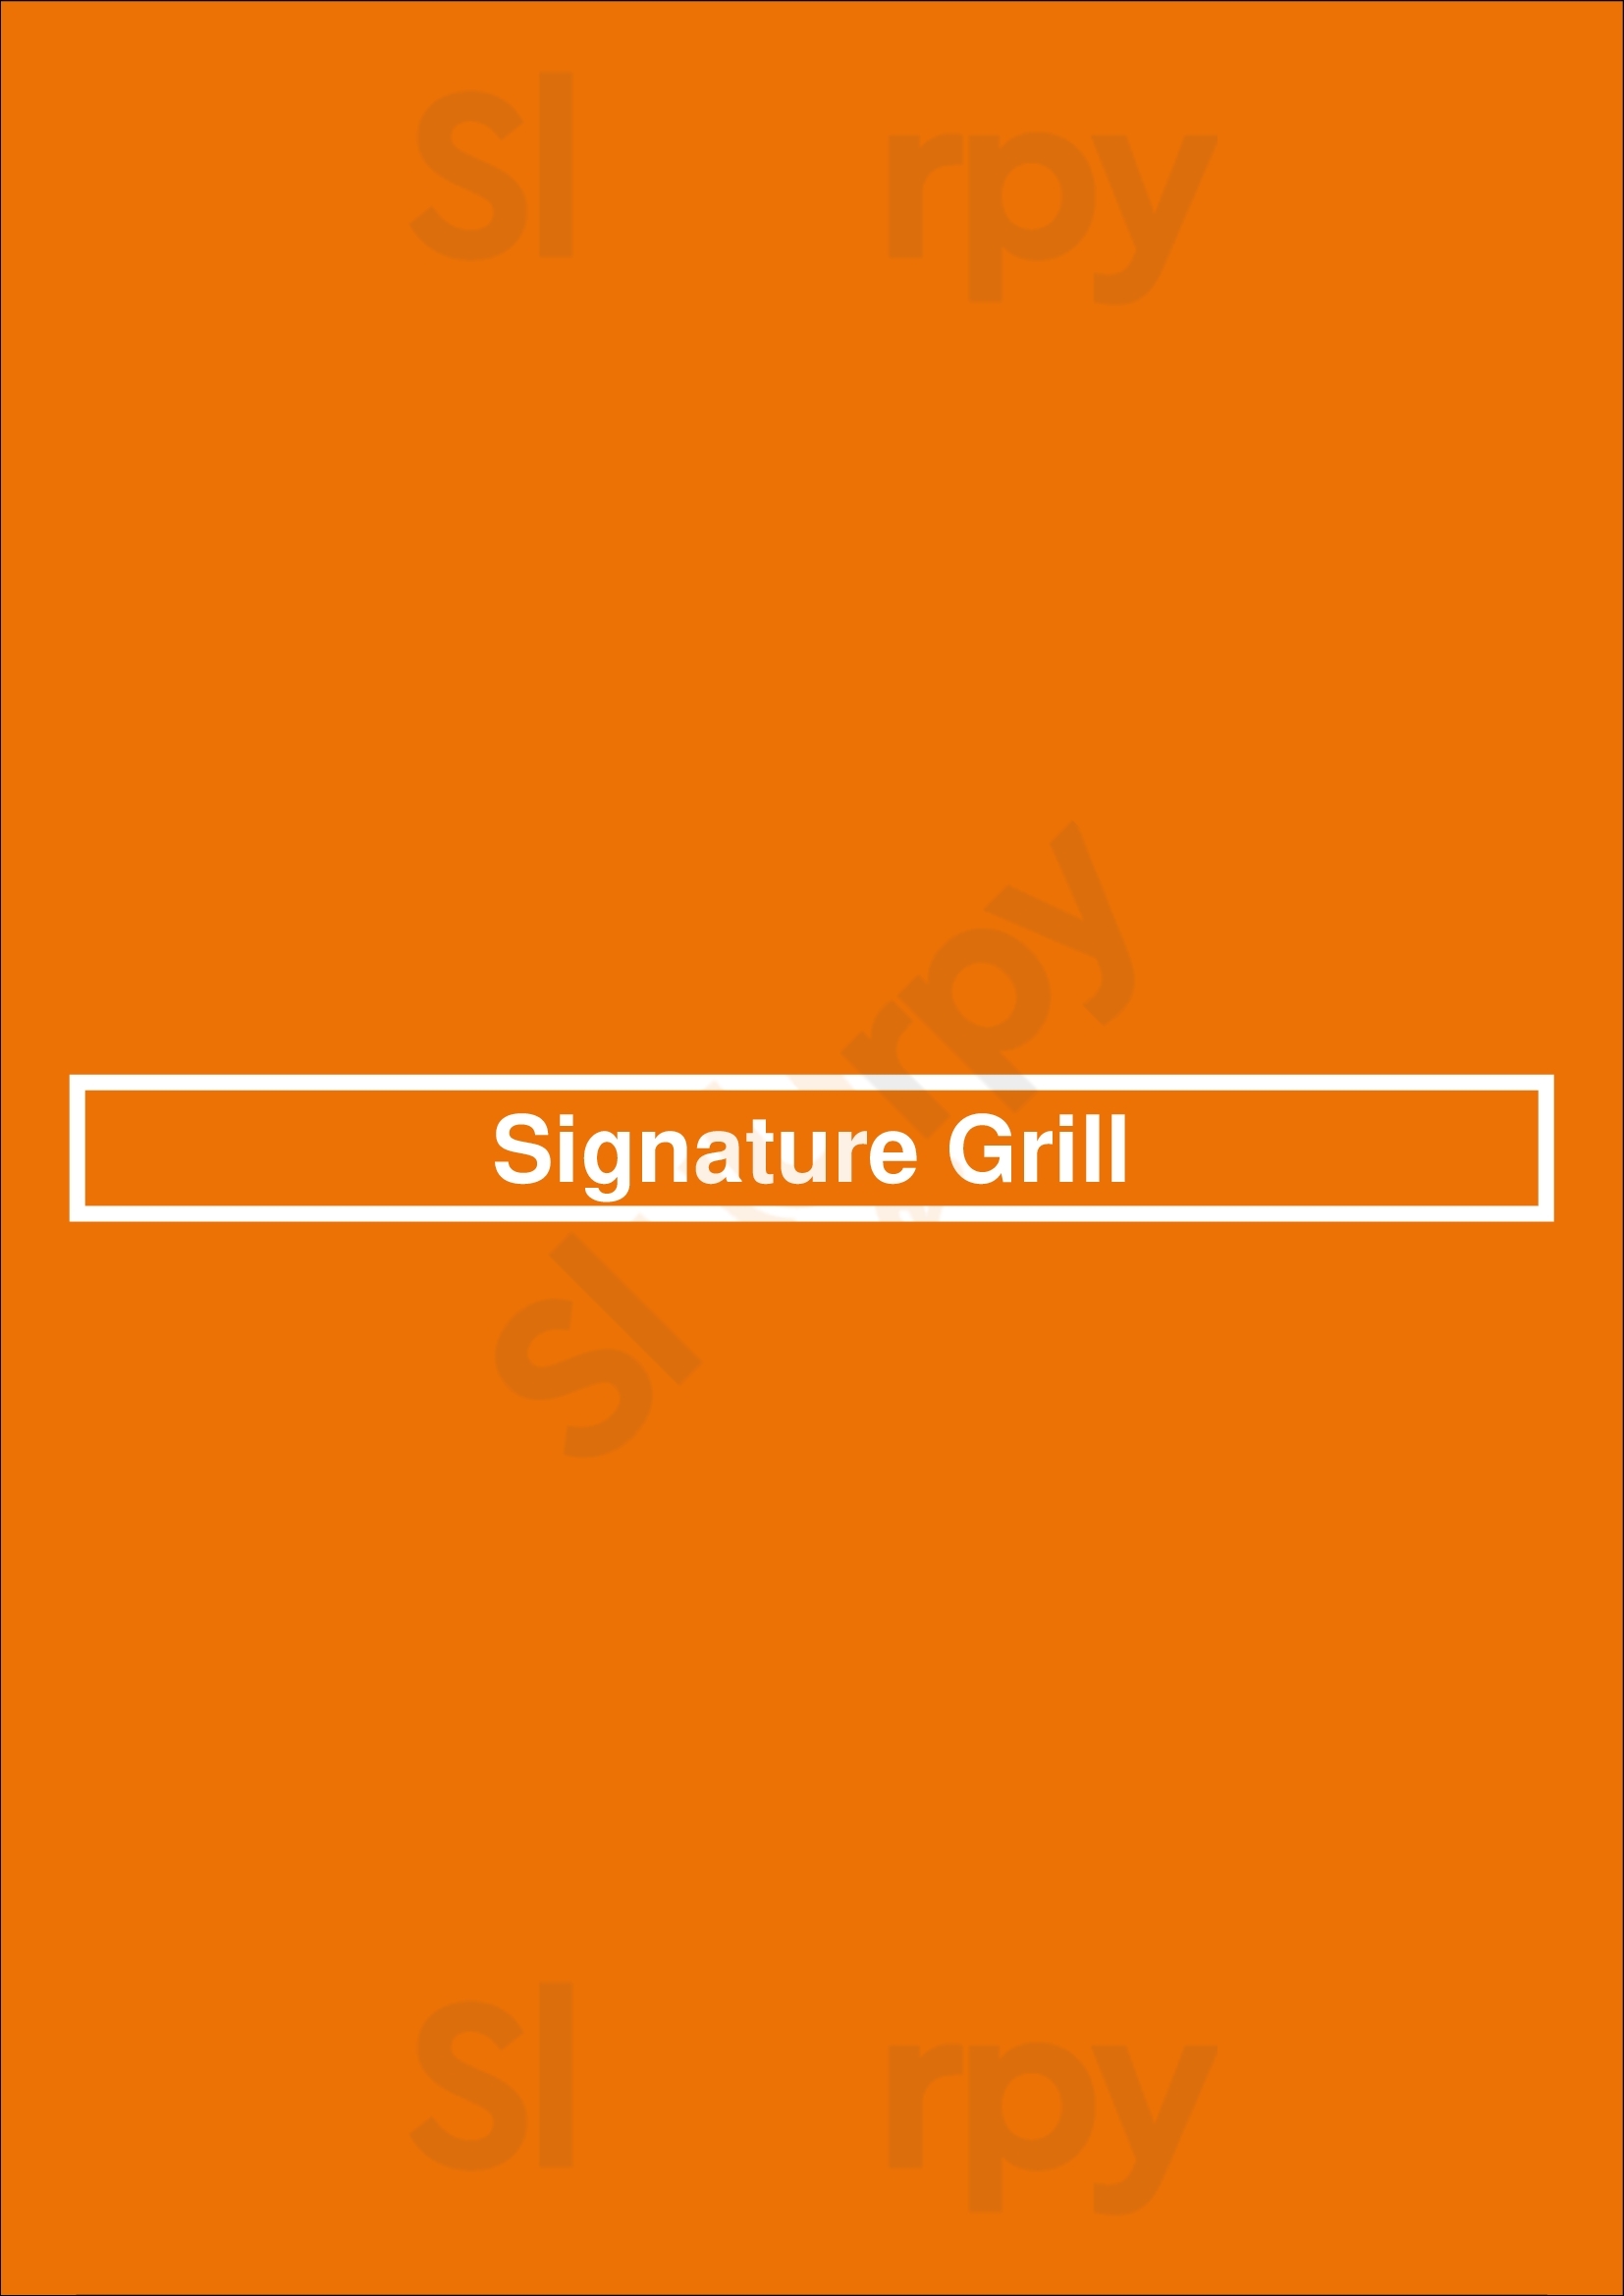 Signature Grill Tucson Menu - 1